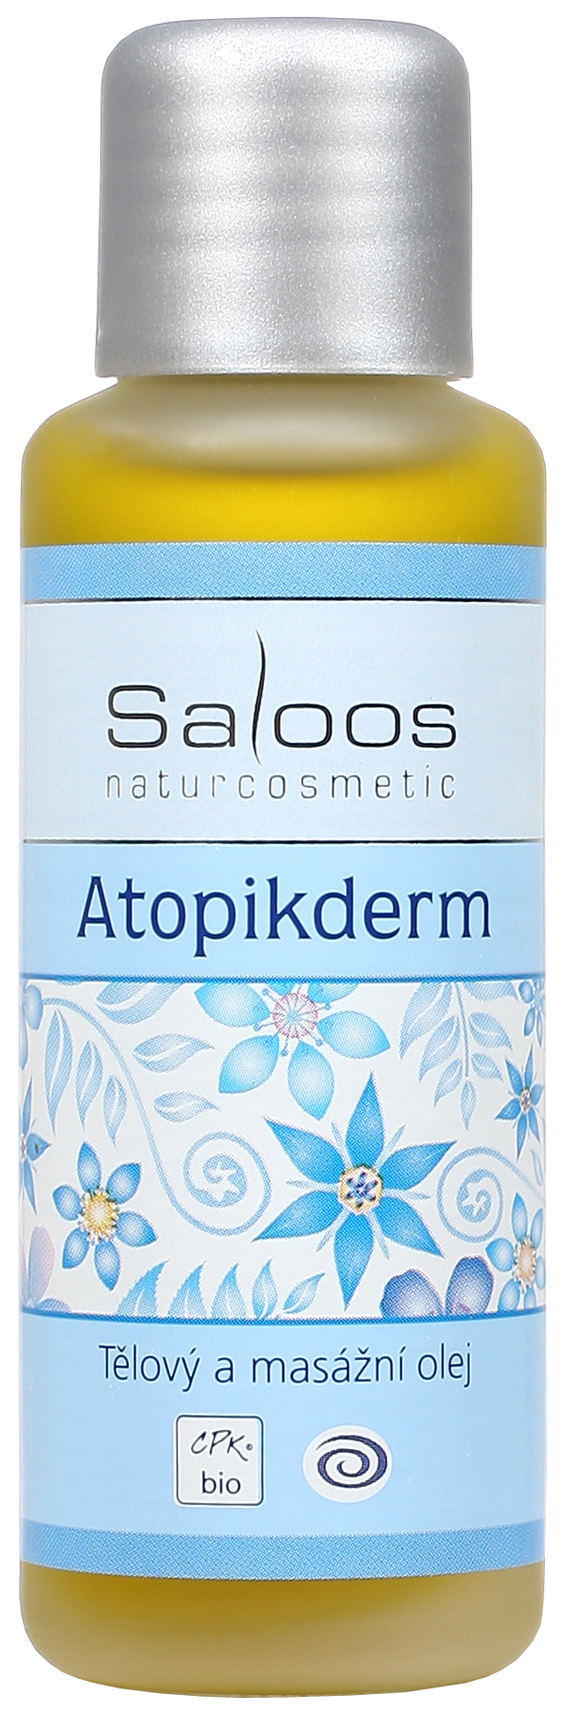 Saloos Bio Atopikderm - tělový a masážní olej Balení: 50 ml